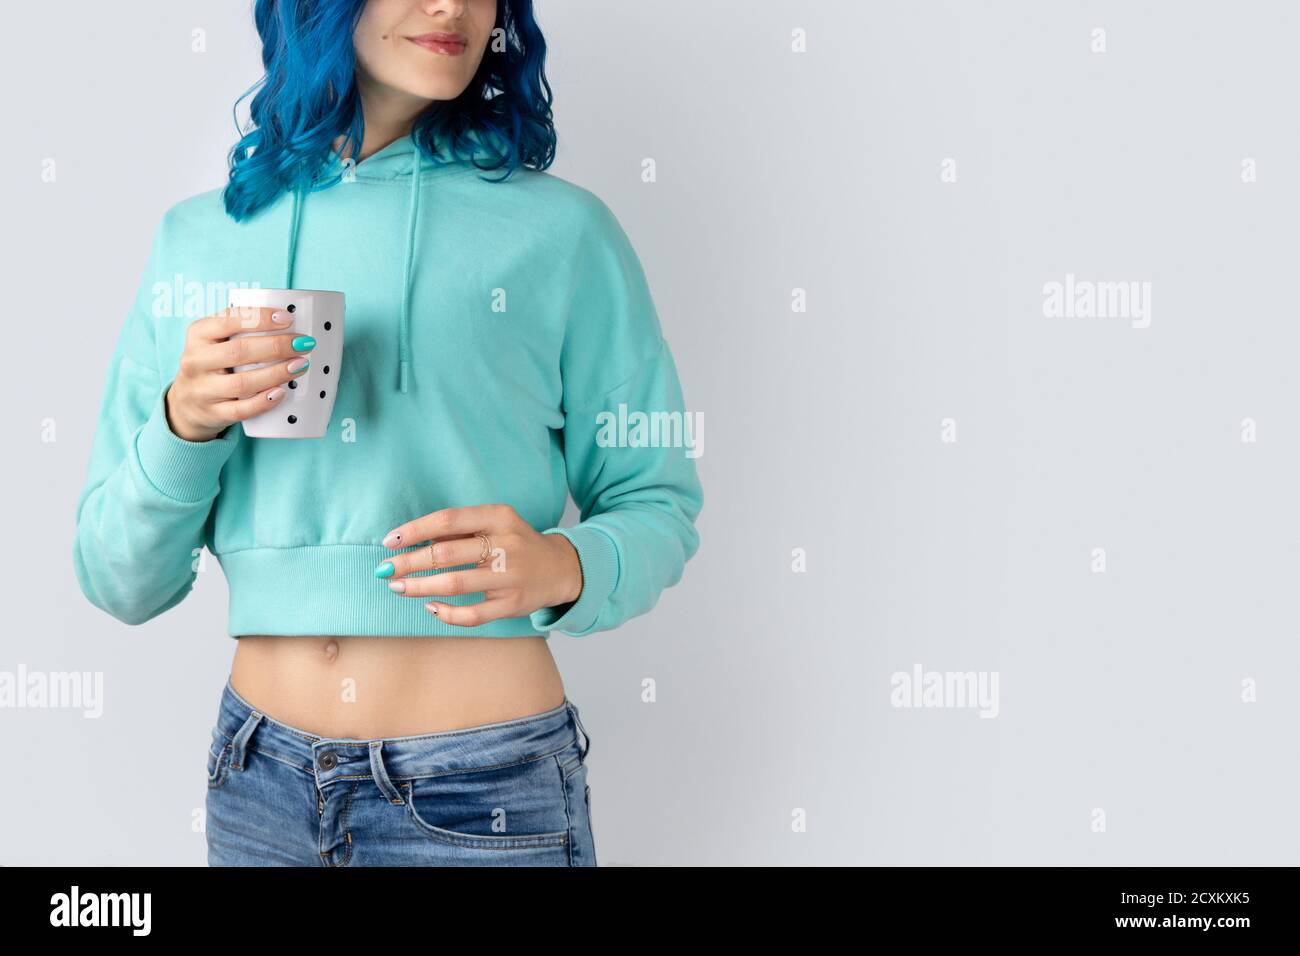 Hermosa mujer joven adulta en una sudadera con capucha de color turquesa con una taza en la mano Fotografía de stock Alamy